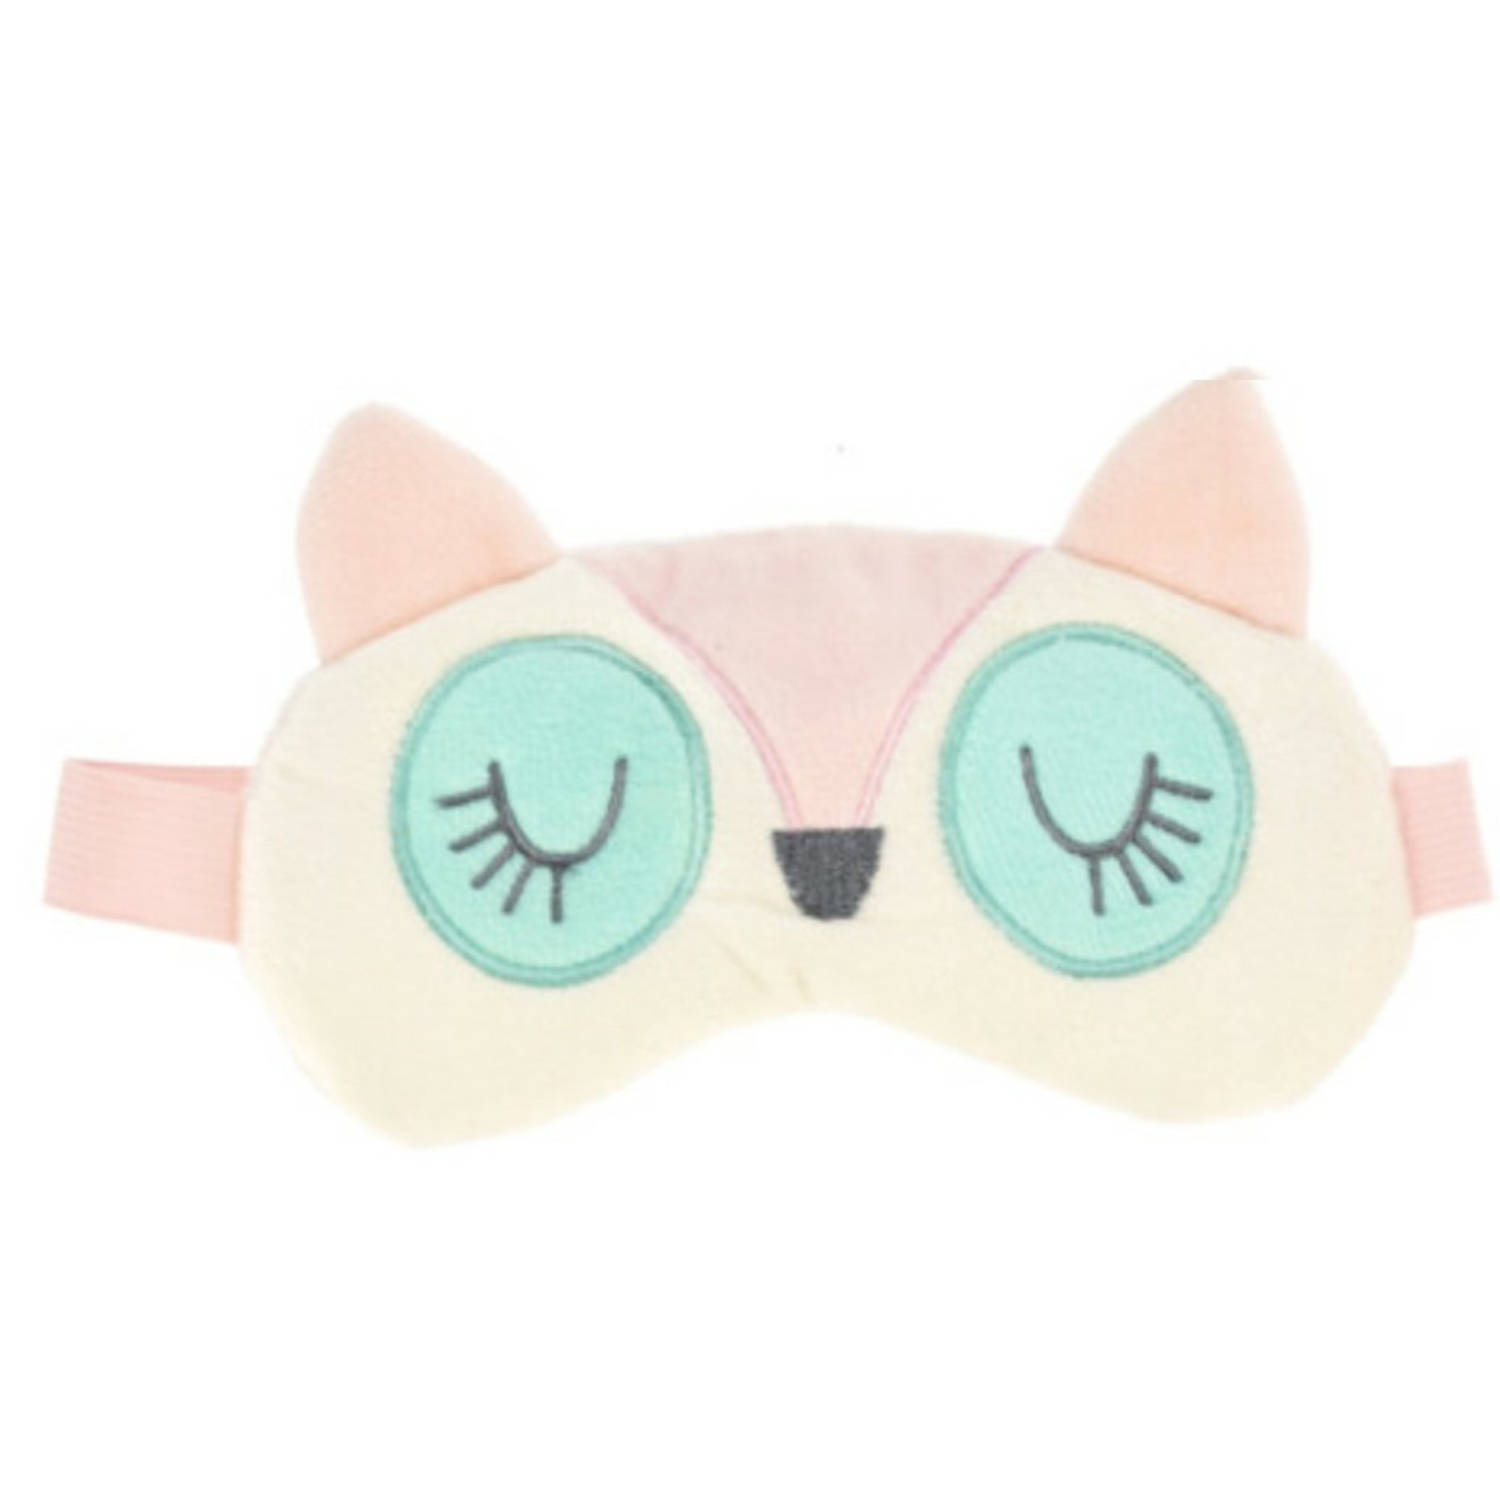 Vos oogmasker-slaapmasker voor kinderen pluche roze Slaapmaskers